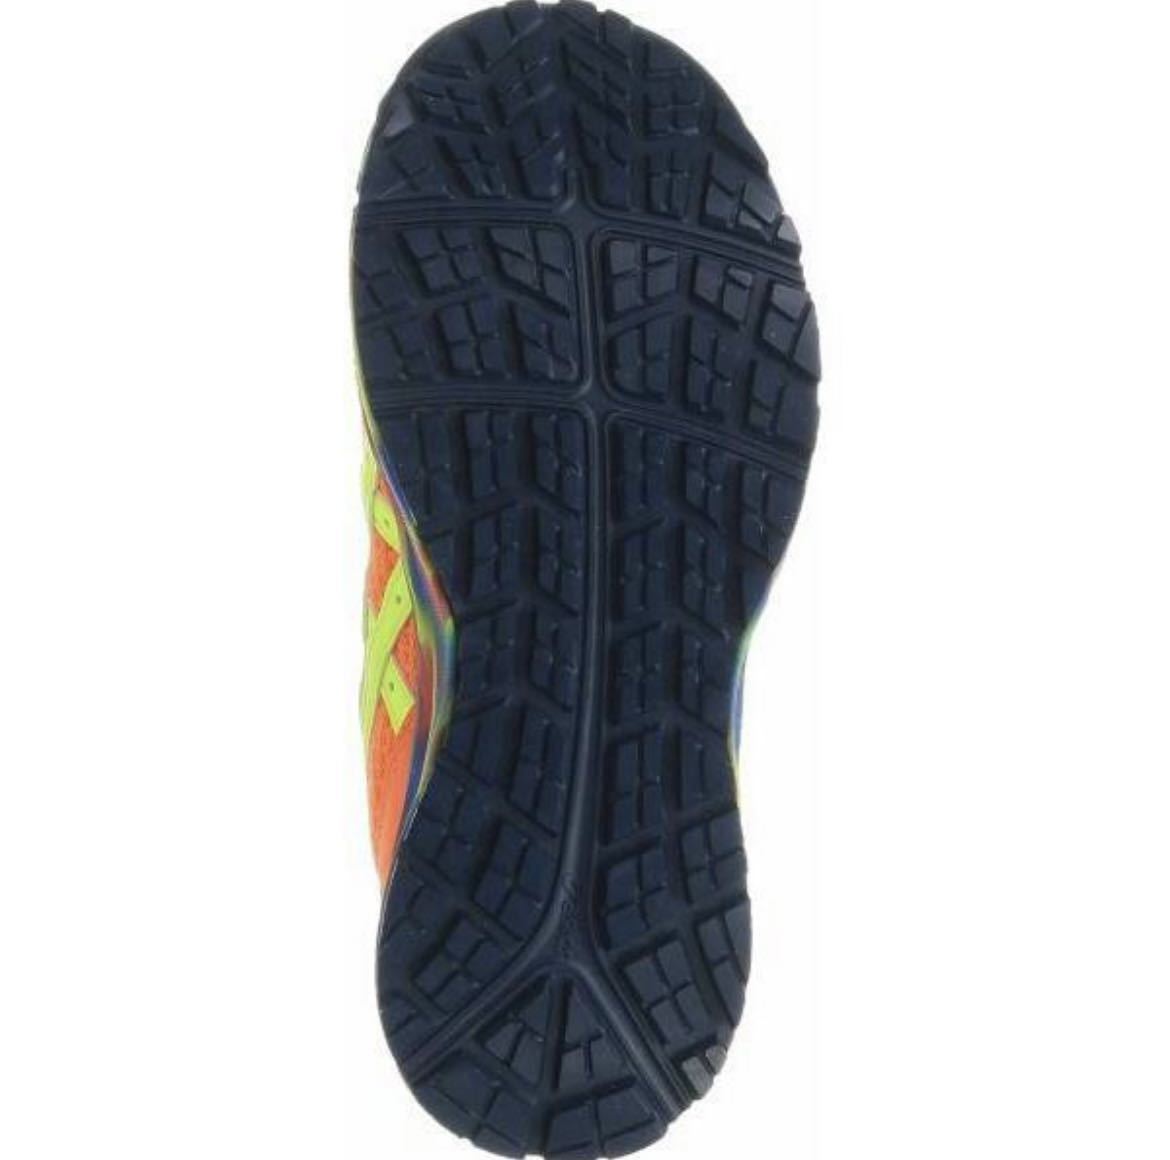  новый товар Asics безопасная обувь wing jobCP203 25.5. ограниченное количество цвет - ikatto текстильная застёжка ③ бесплатная доставка включая доставку 